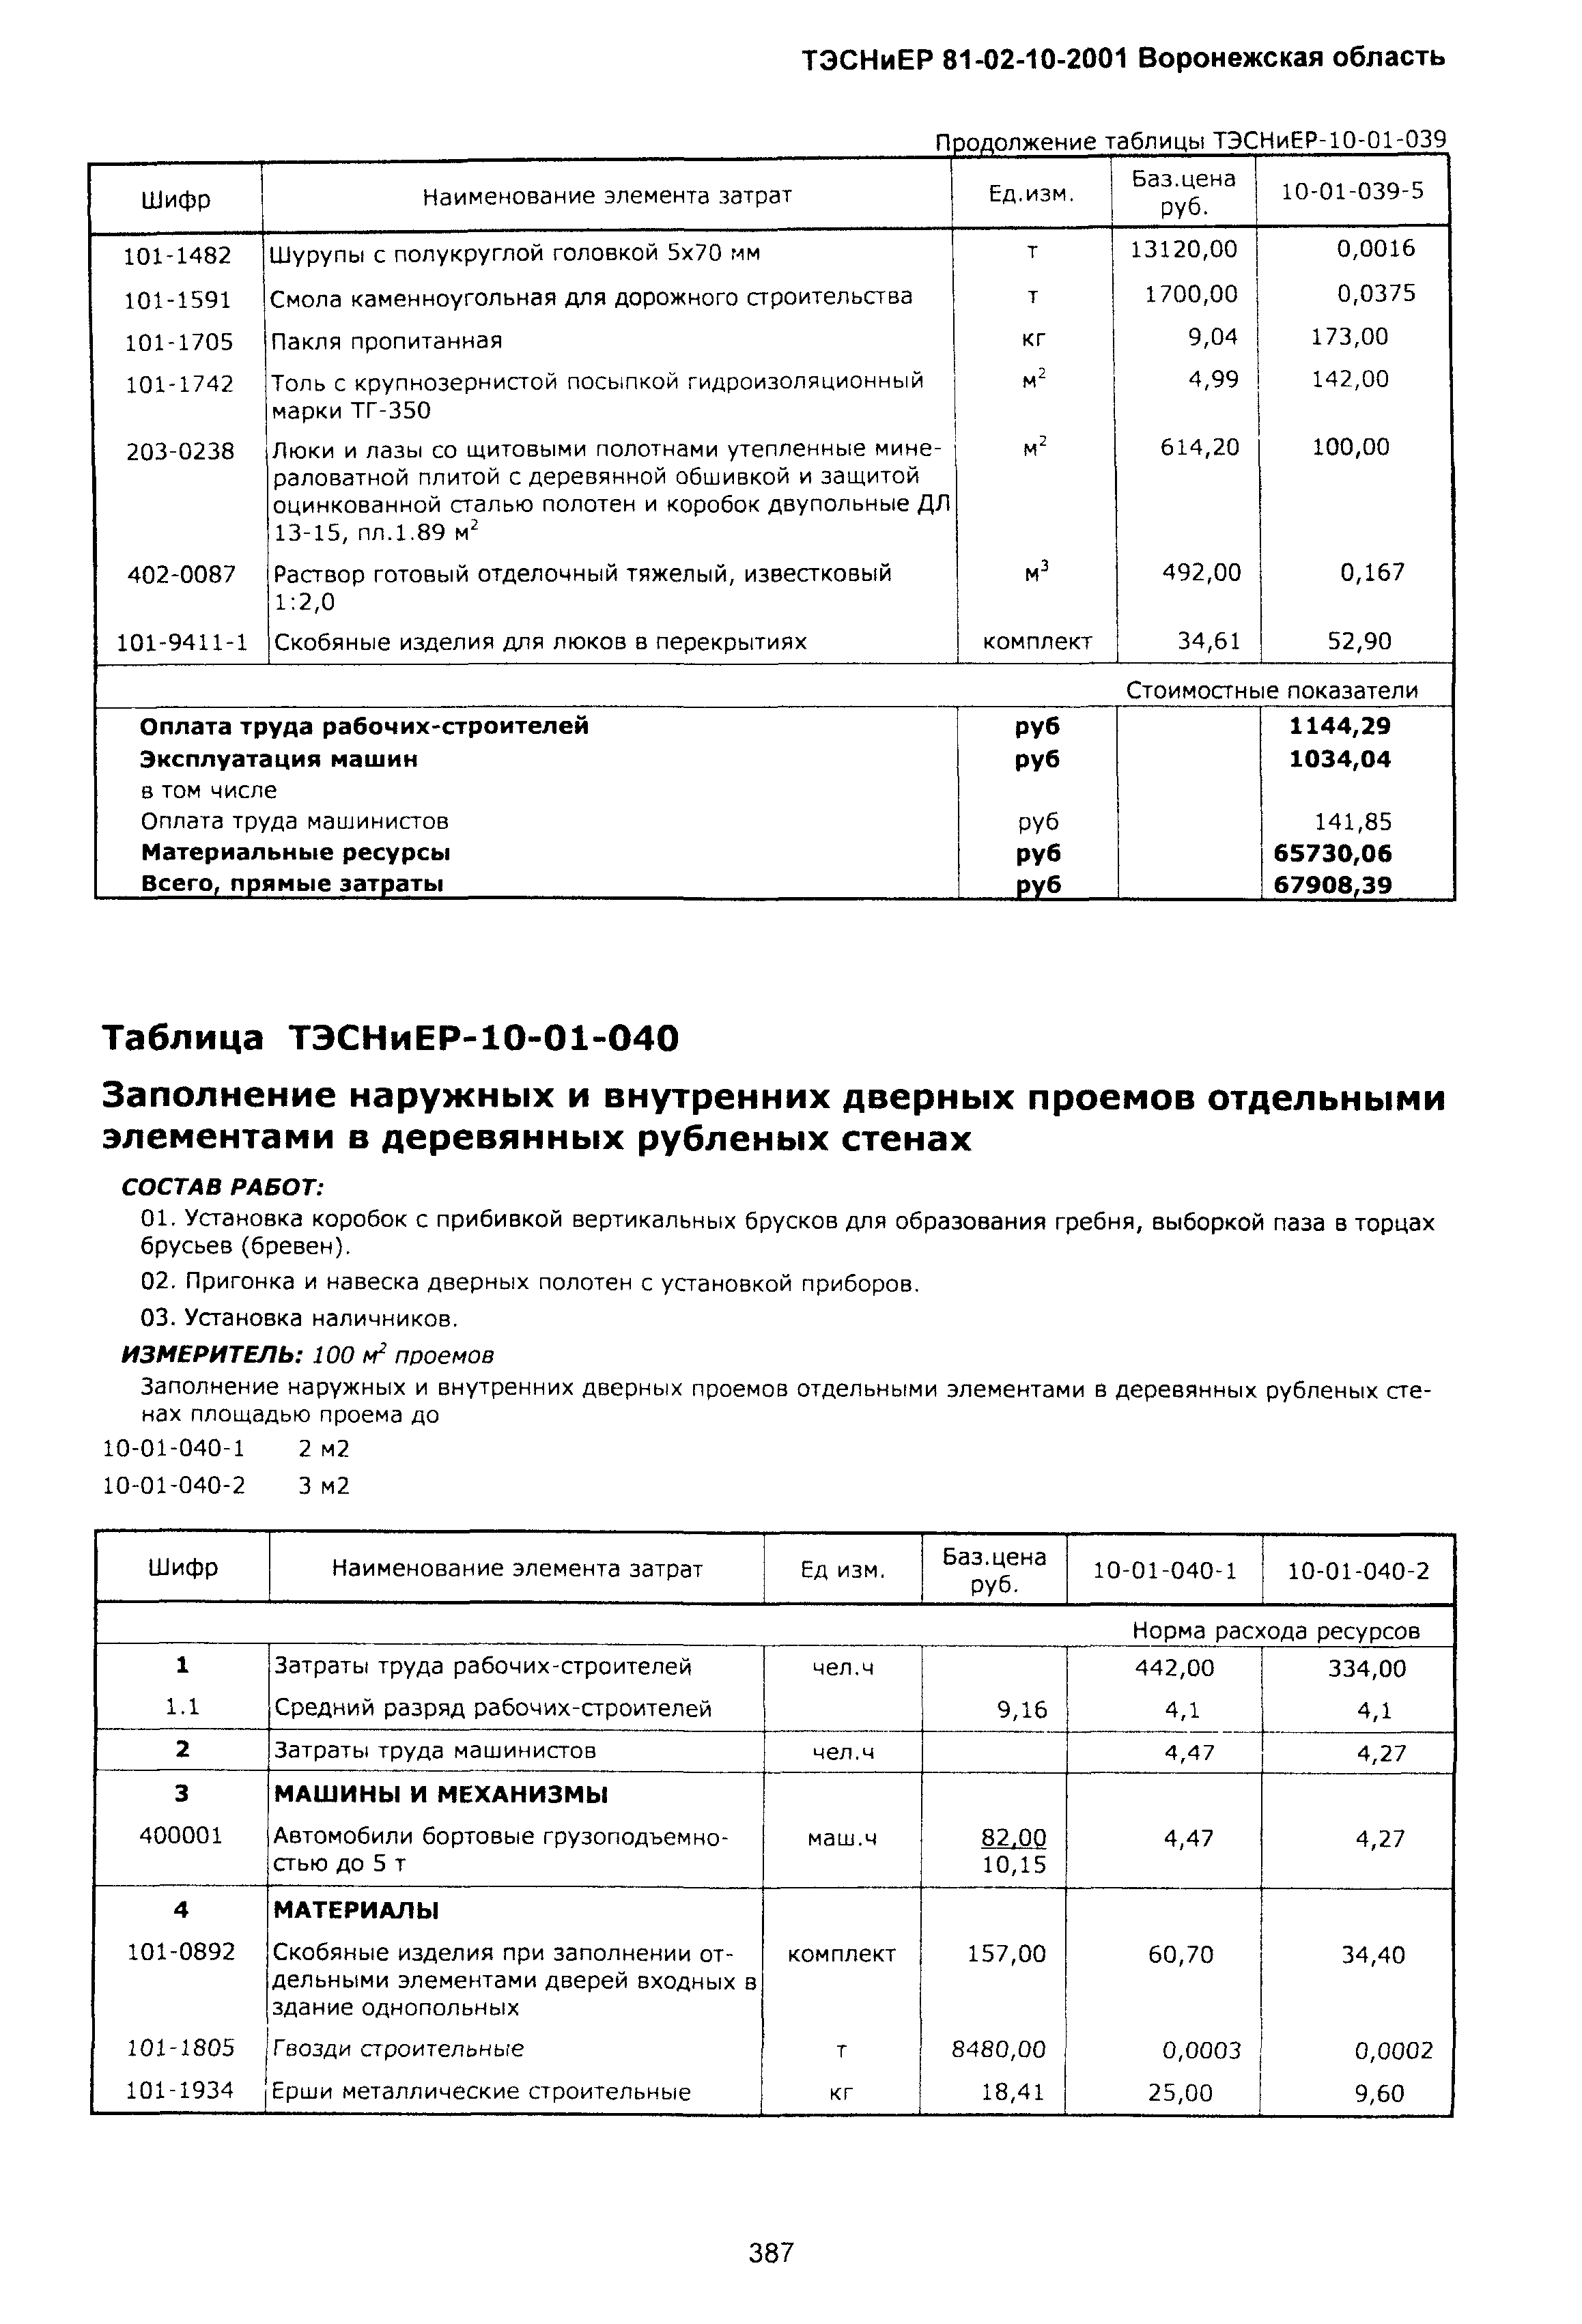 ТЭСНиЕР Воронежской области 81-02-10-2001